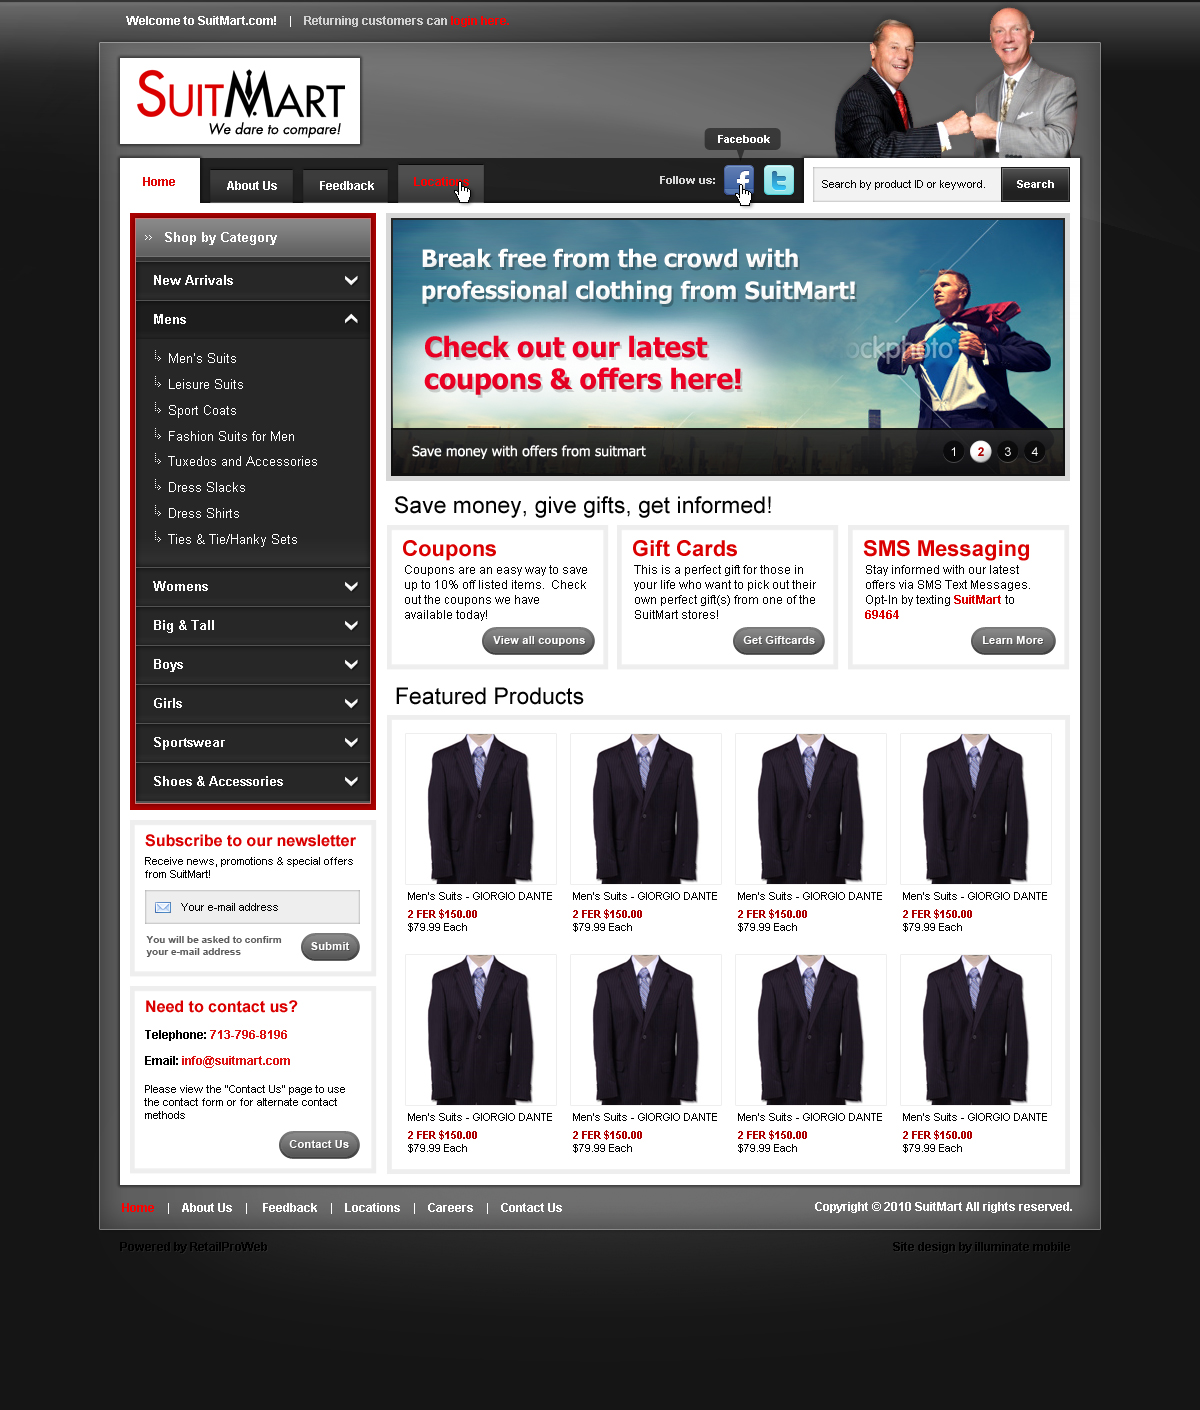 suitmart-website-template-1-by-axertion-on-deviantart